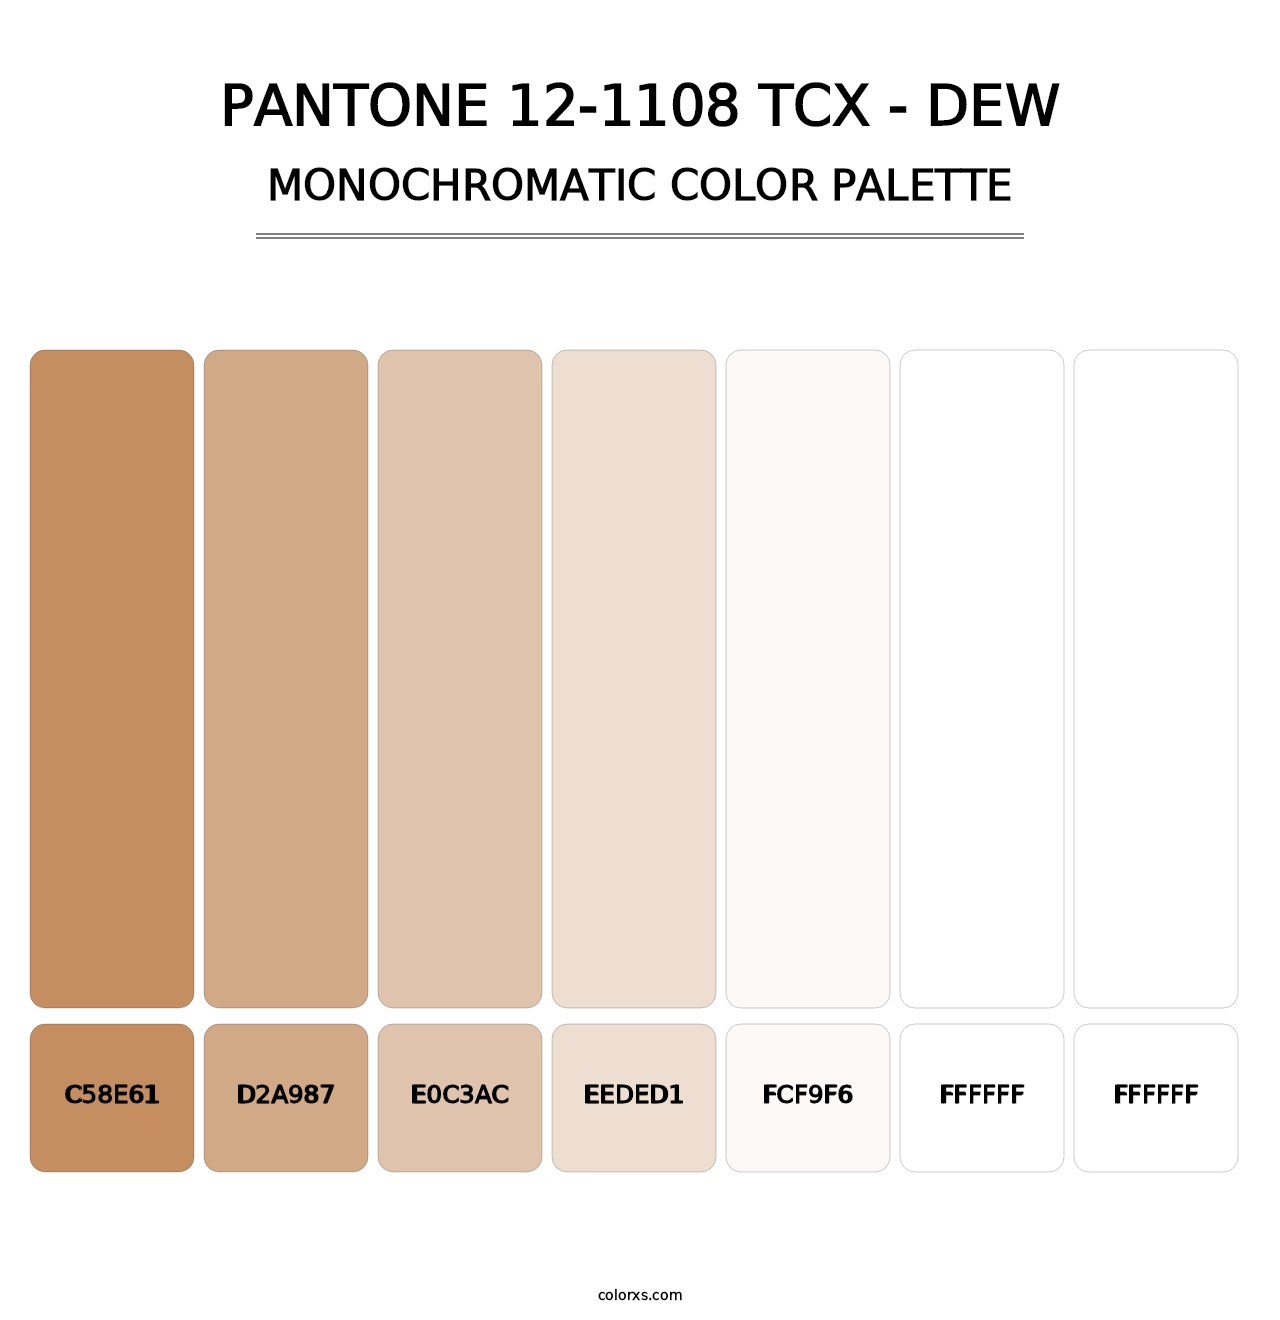 PANTONE 12-1108 TCX - Dew - Monochromatic Color Palette